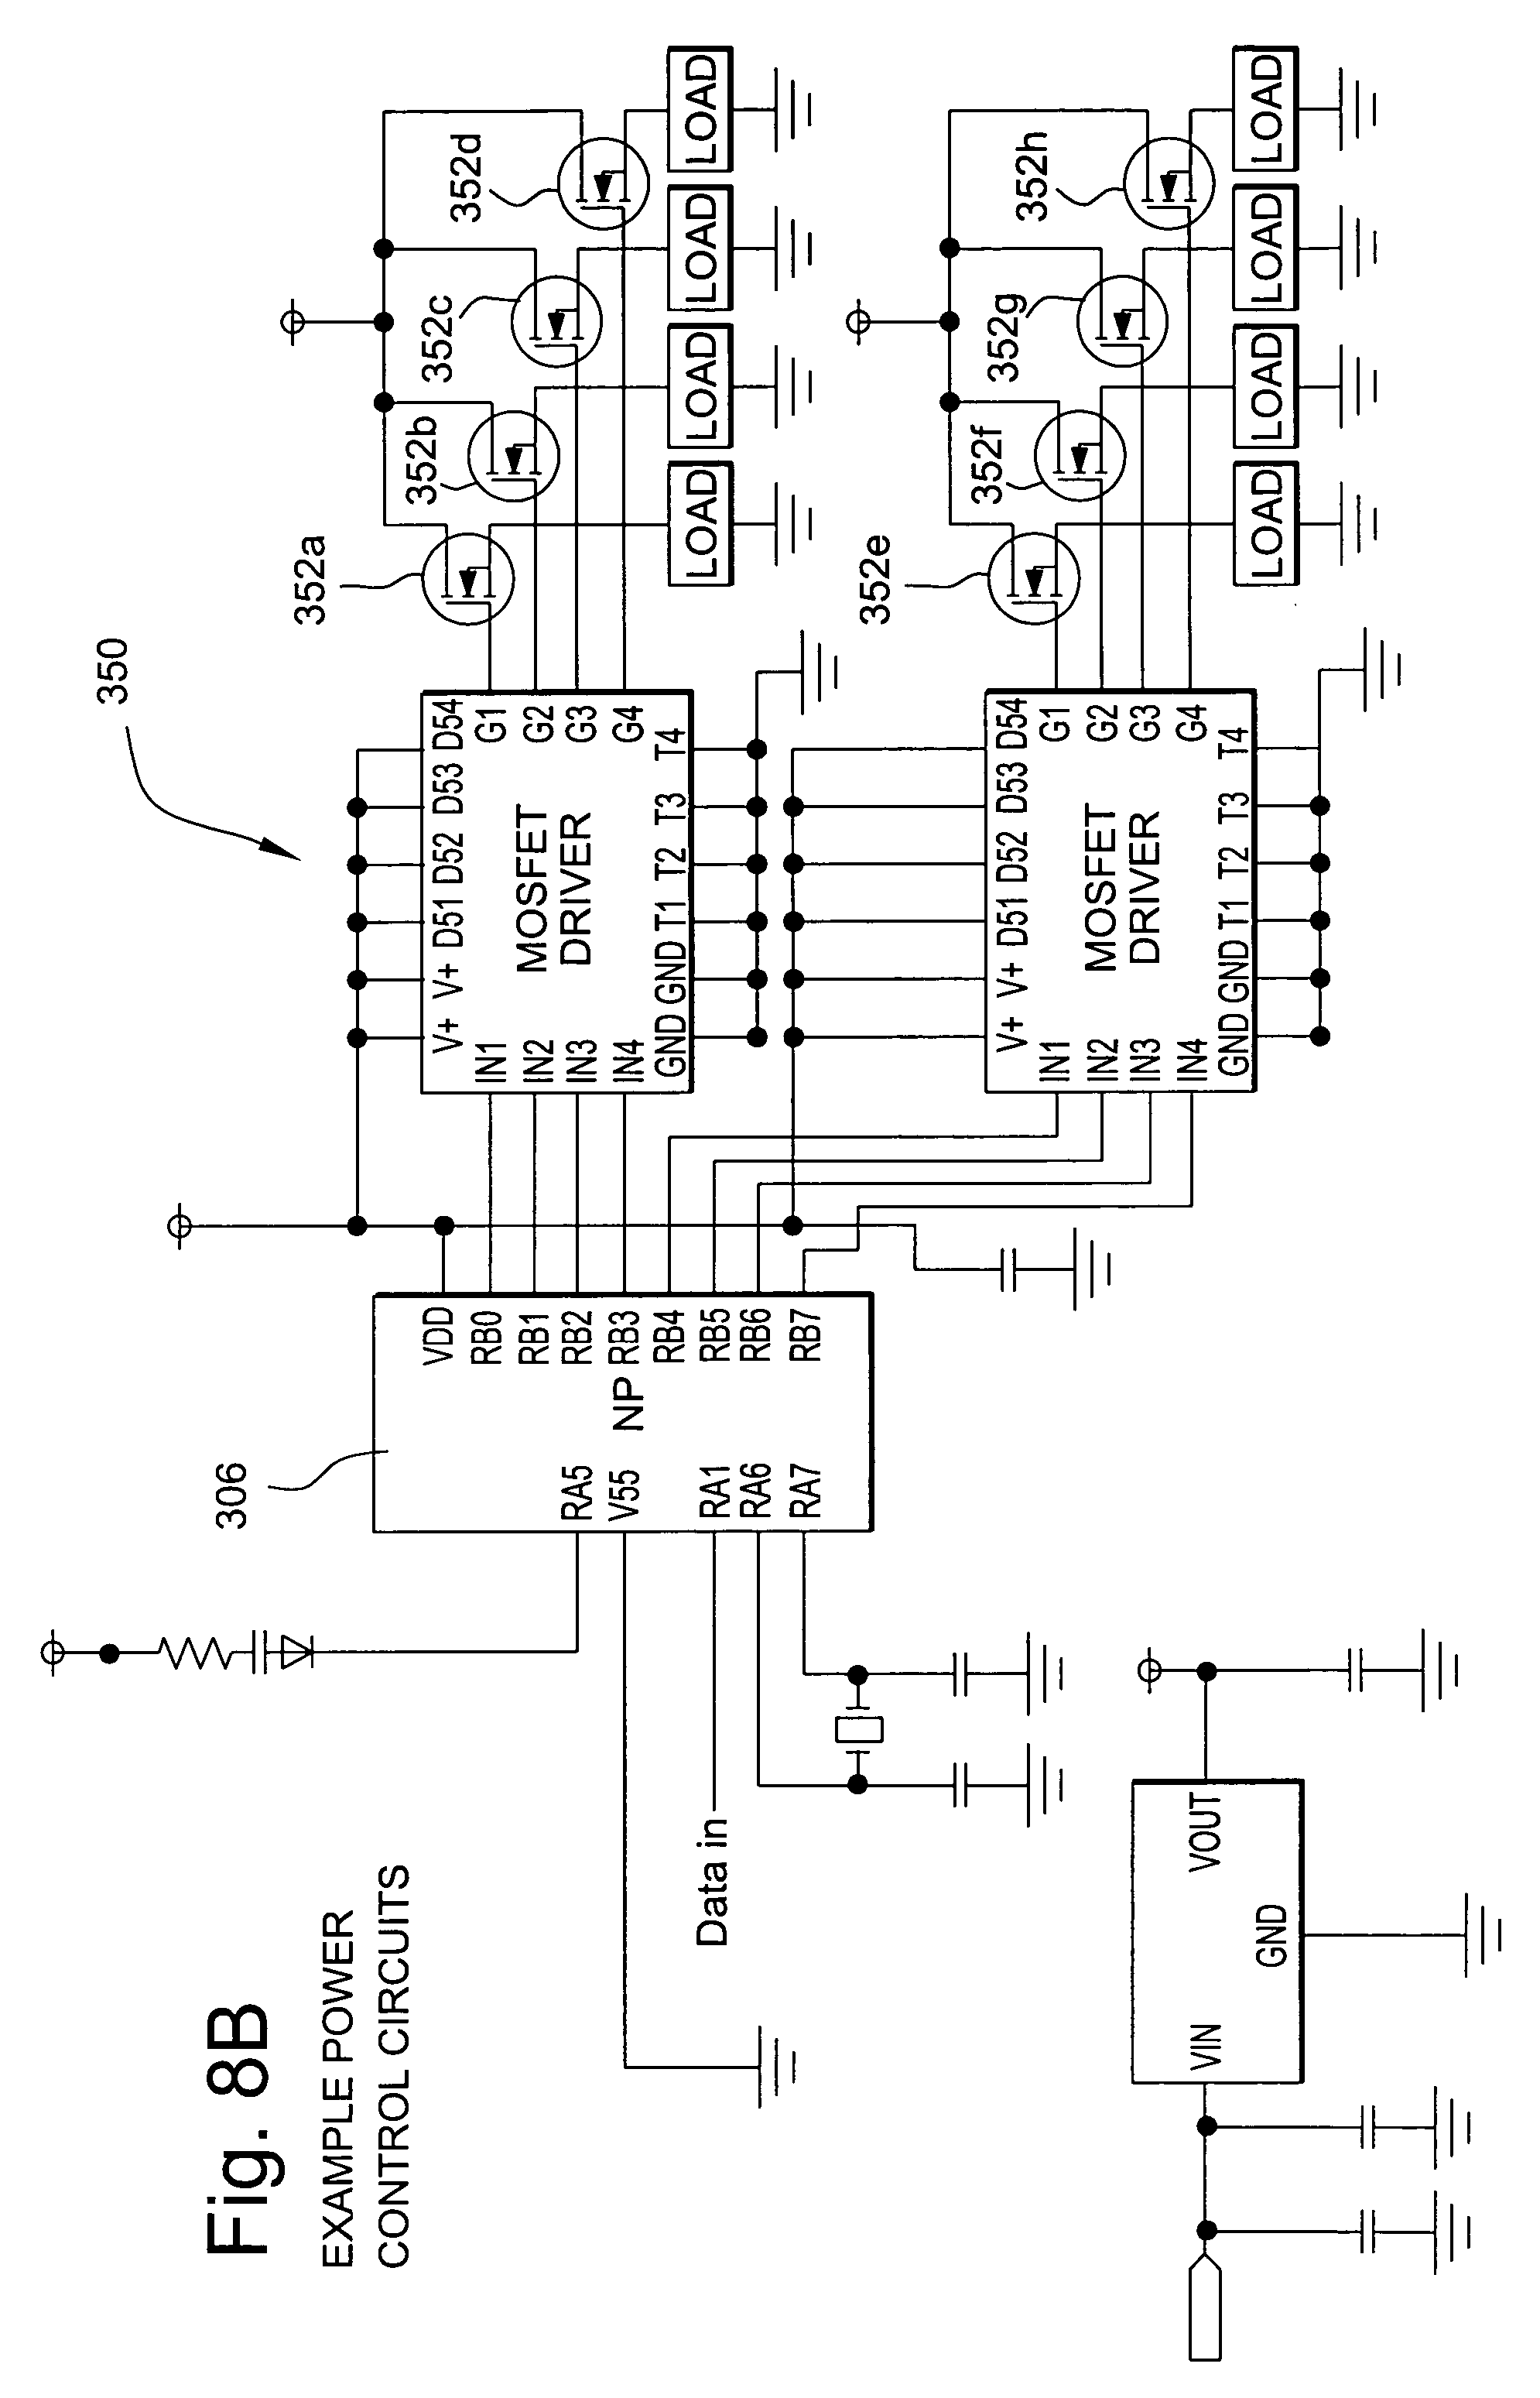 Diagram Code 3 Mx7000 Wiring Diagram Full Version Hd Quality Wiring Diagram Coastdiagramleg Abced It